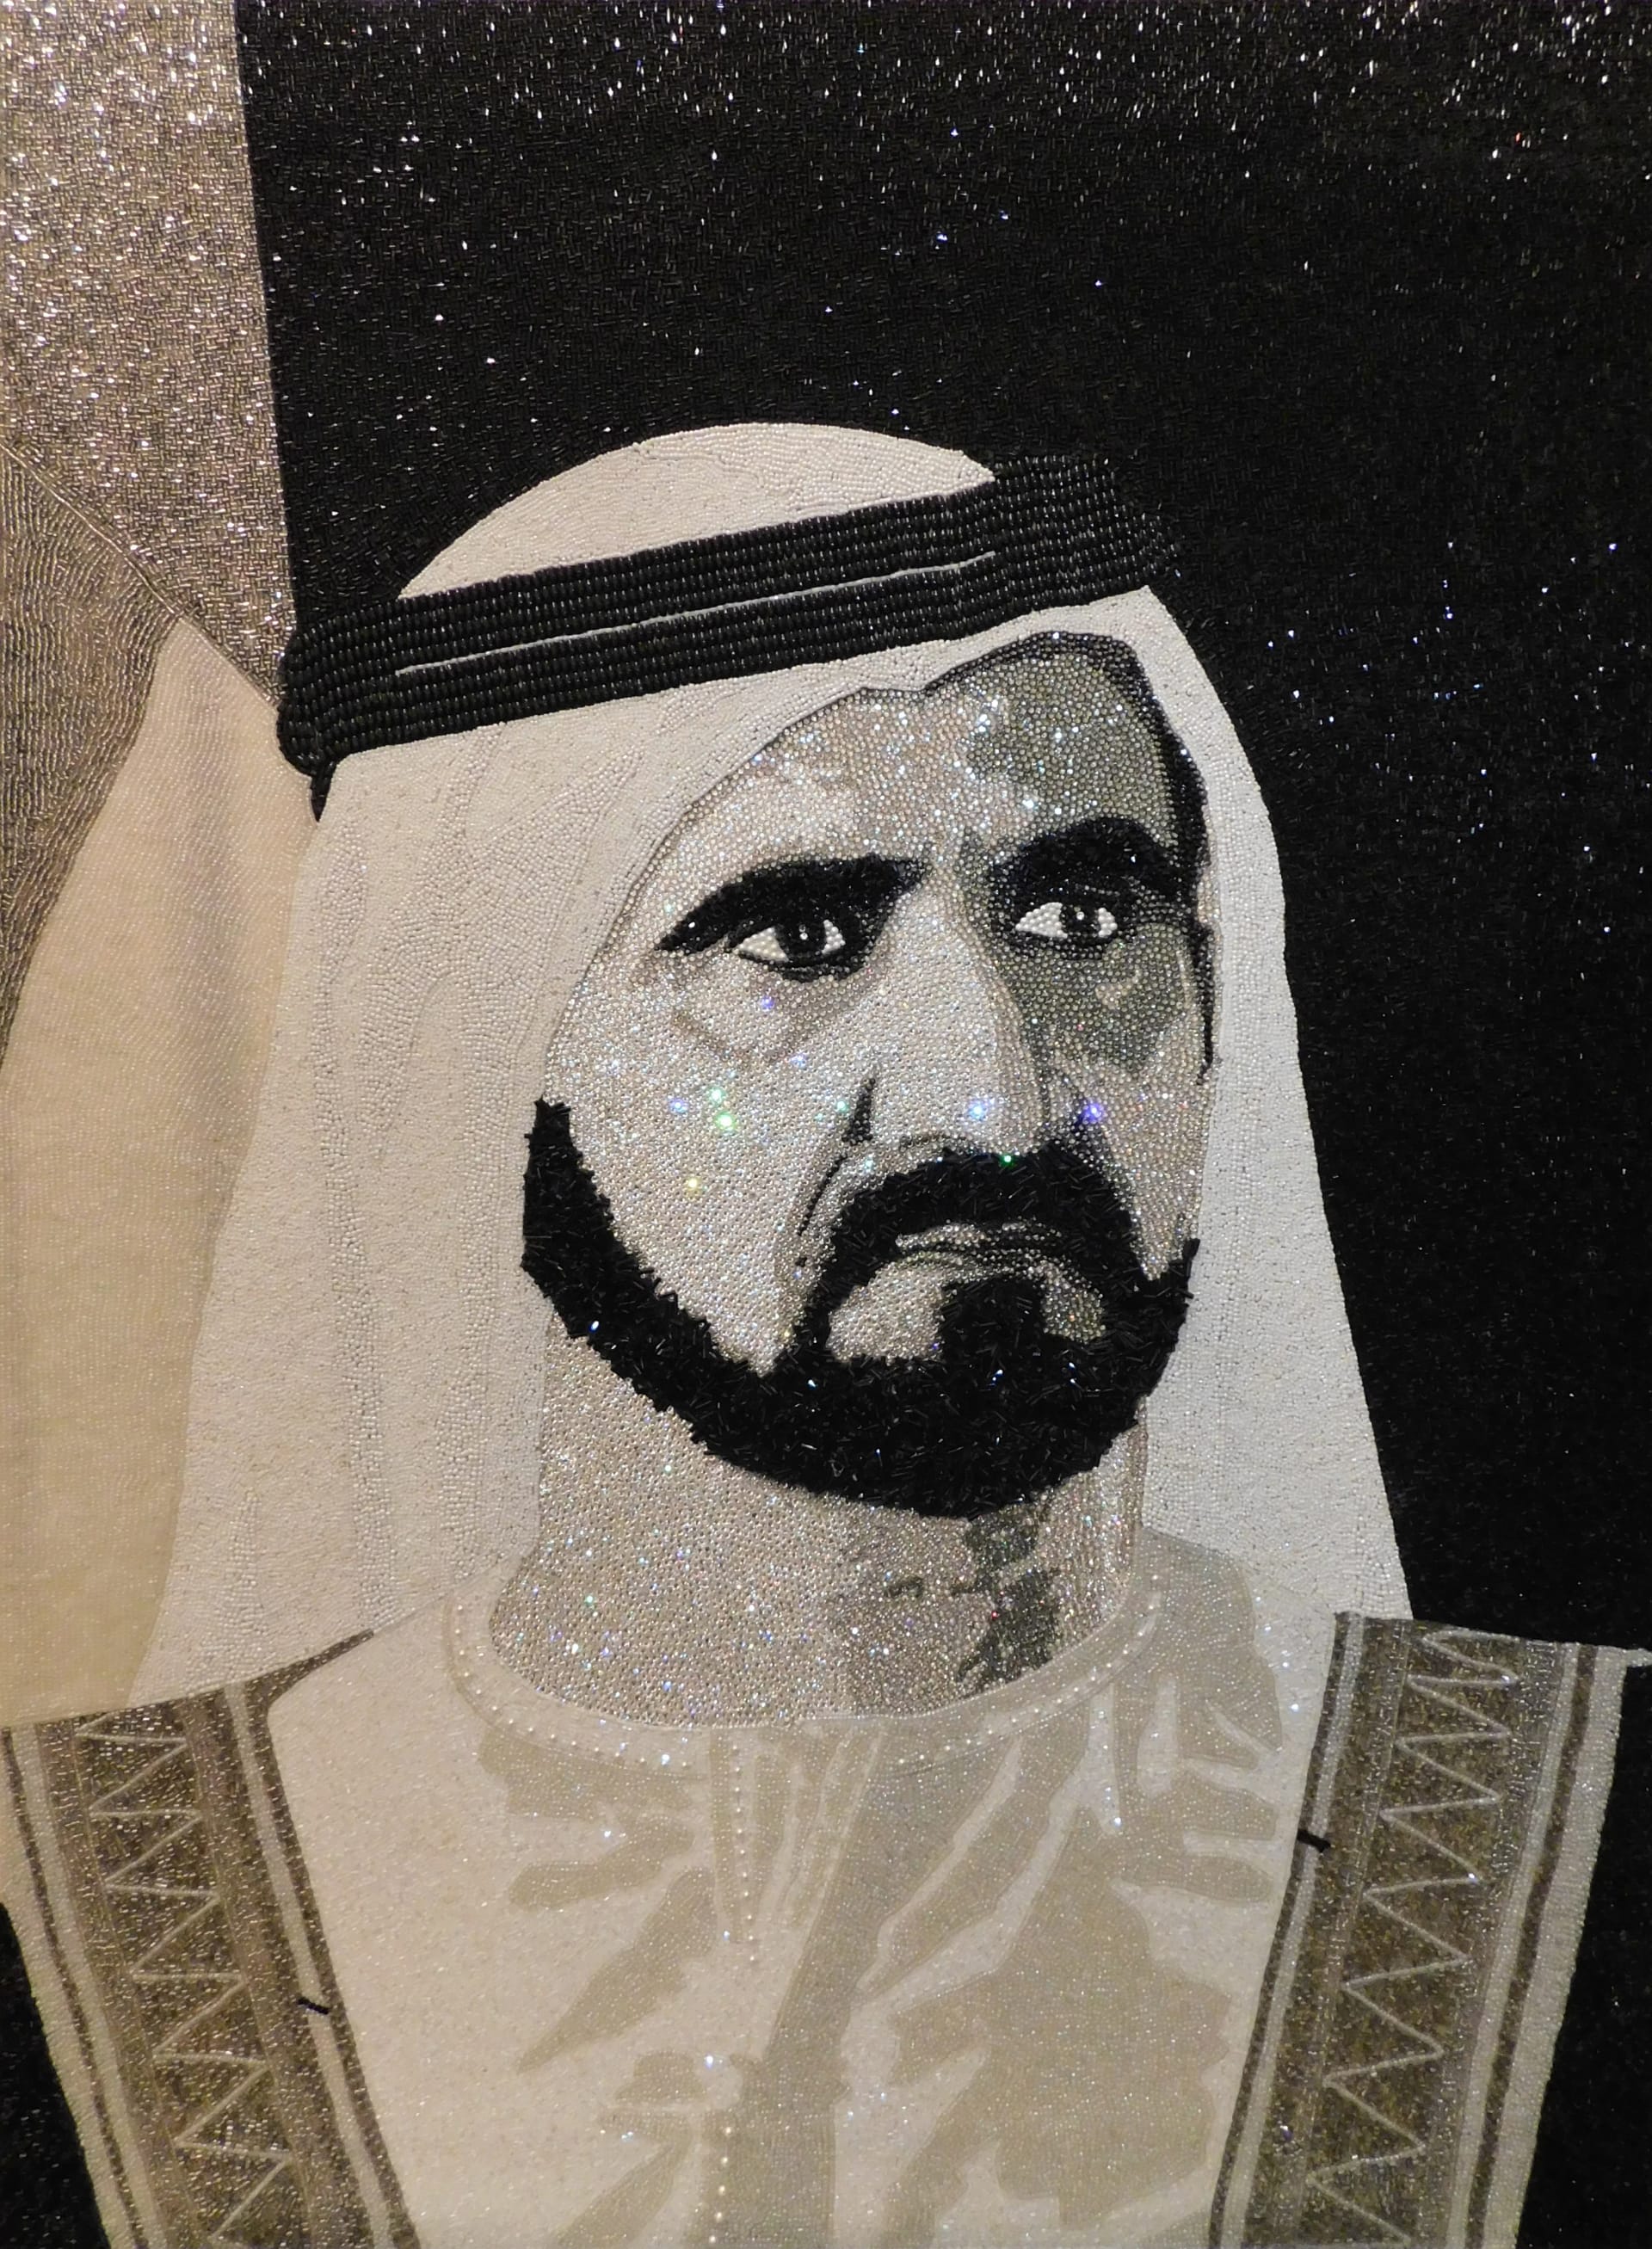 بأكثر من بمليوني بلورة سواروفسكي.. كم تكلف هذه اللوحات الكريستالية لقادة الإمارات؟